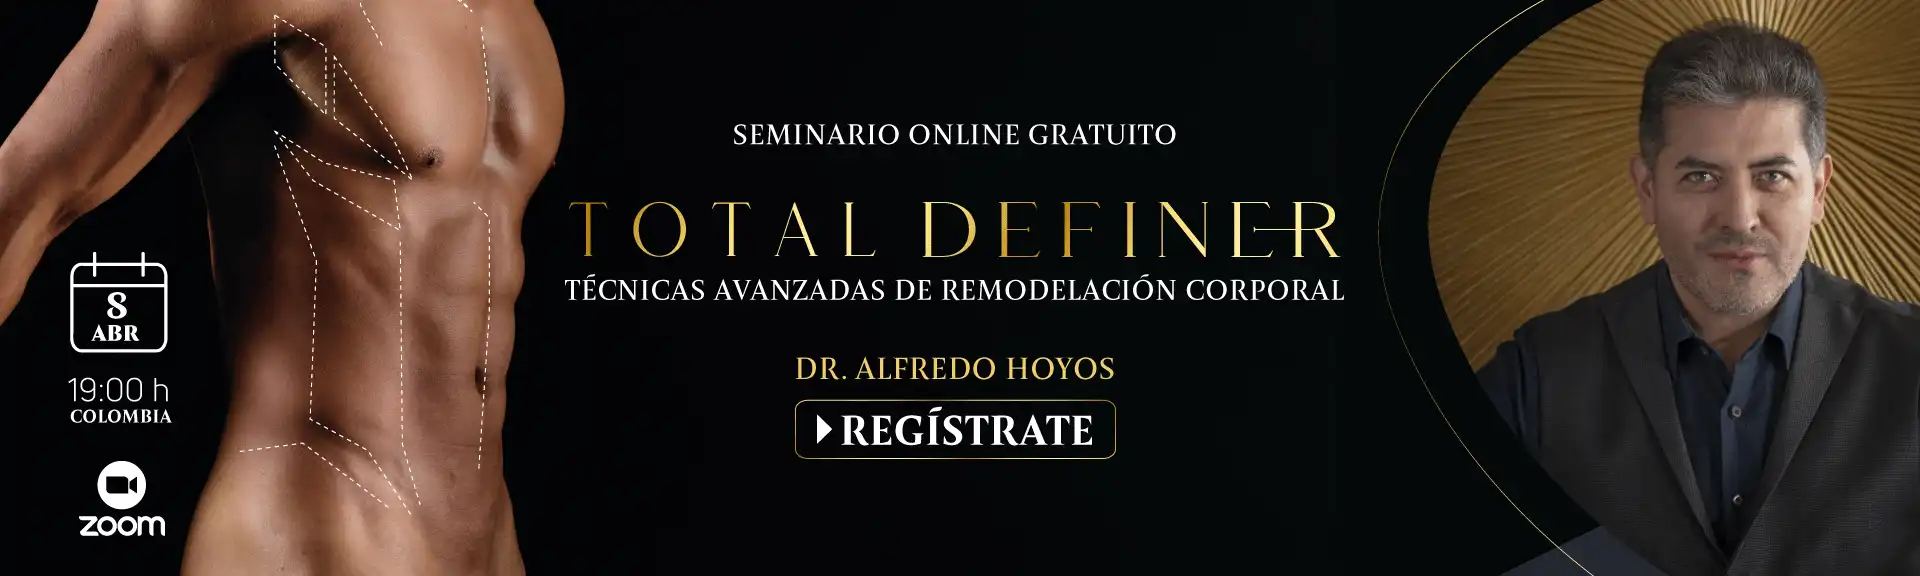 Seminario Online "Total Definer: técnicas avanzadas de remodelación corporal"